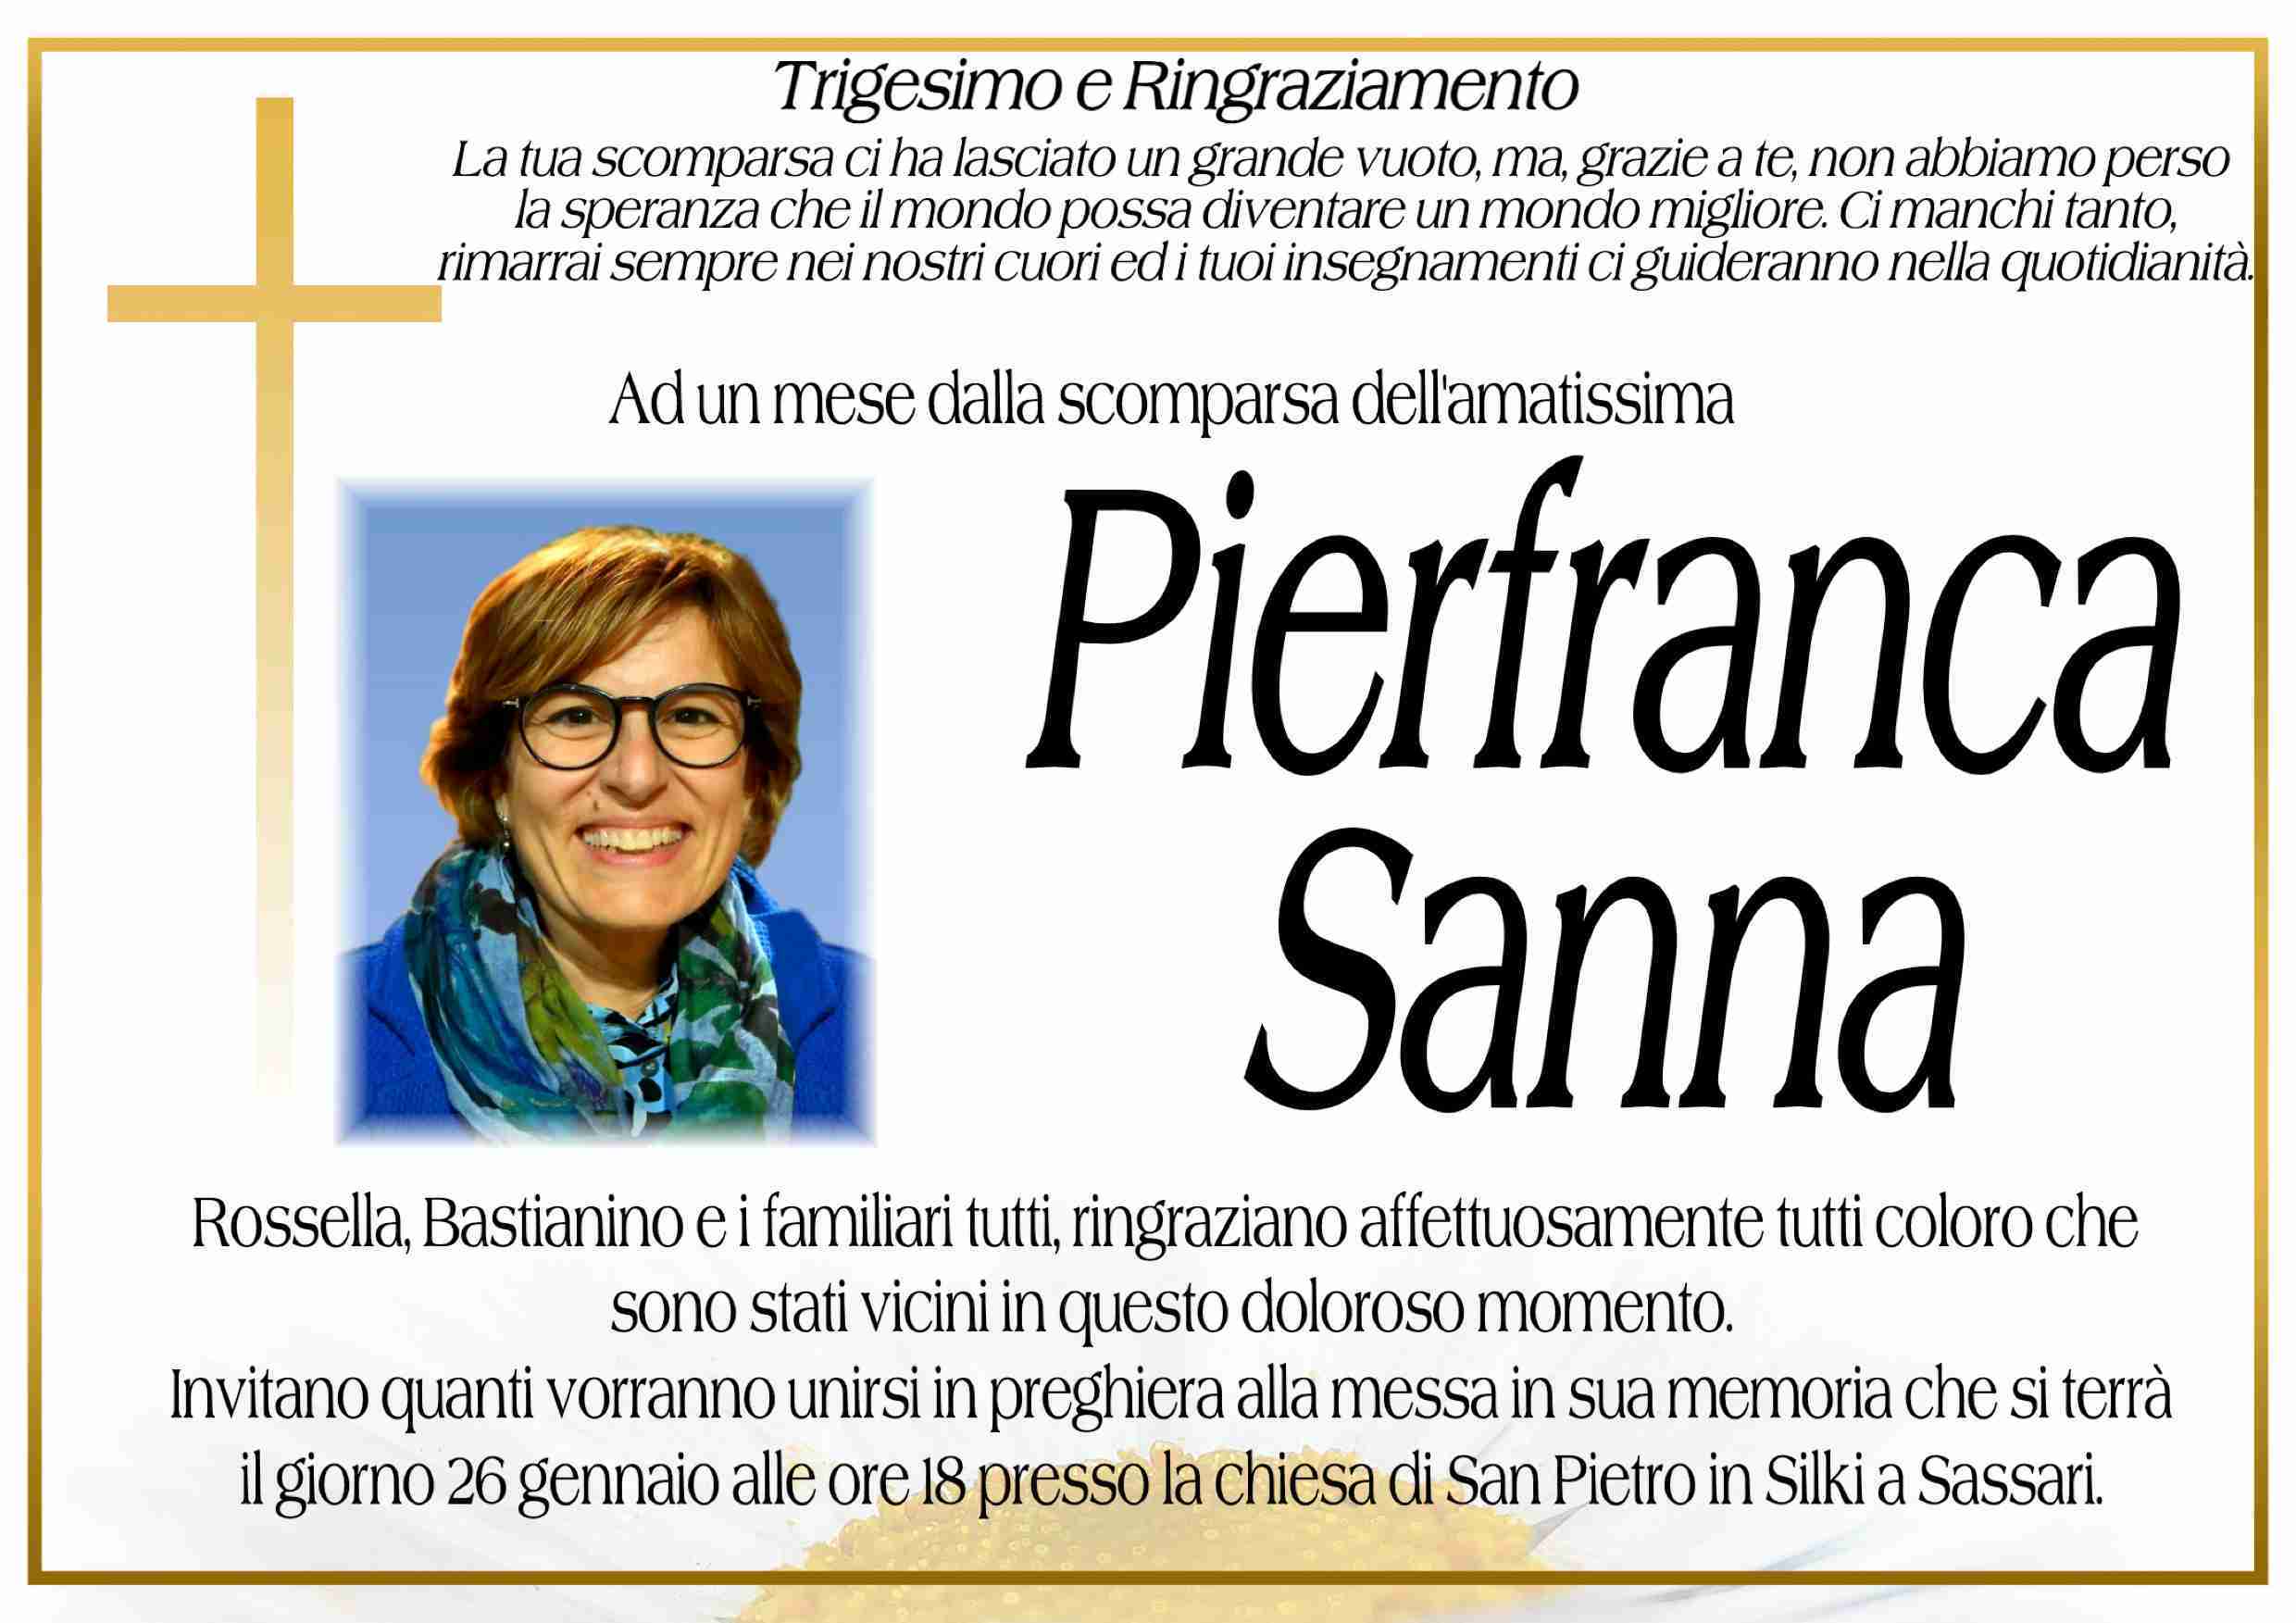 Pierfranca Sanna